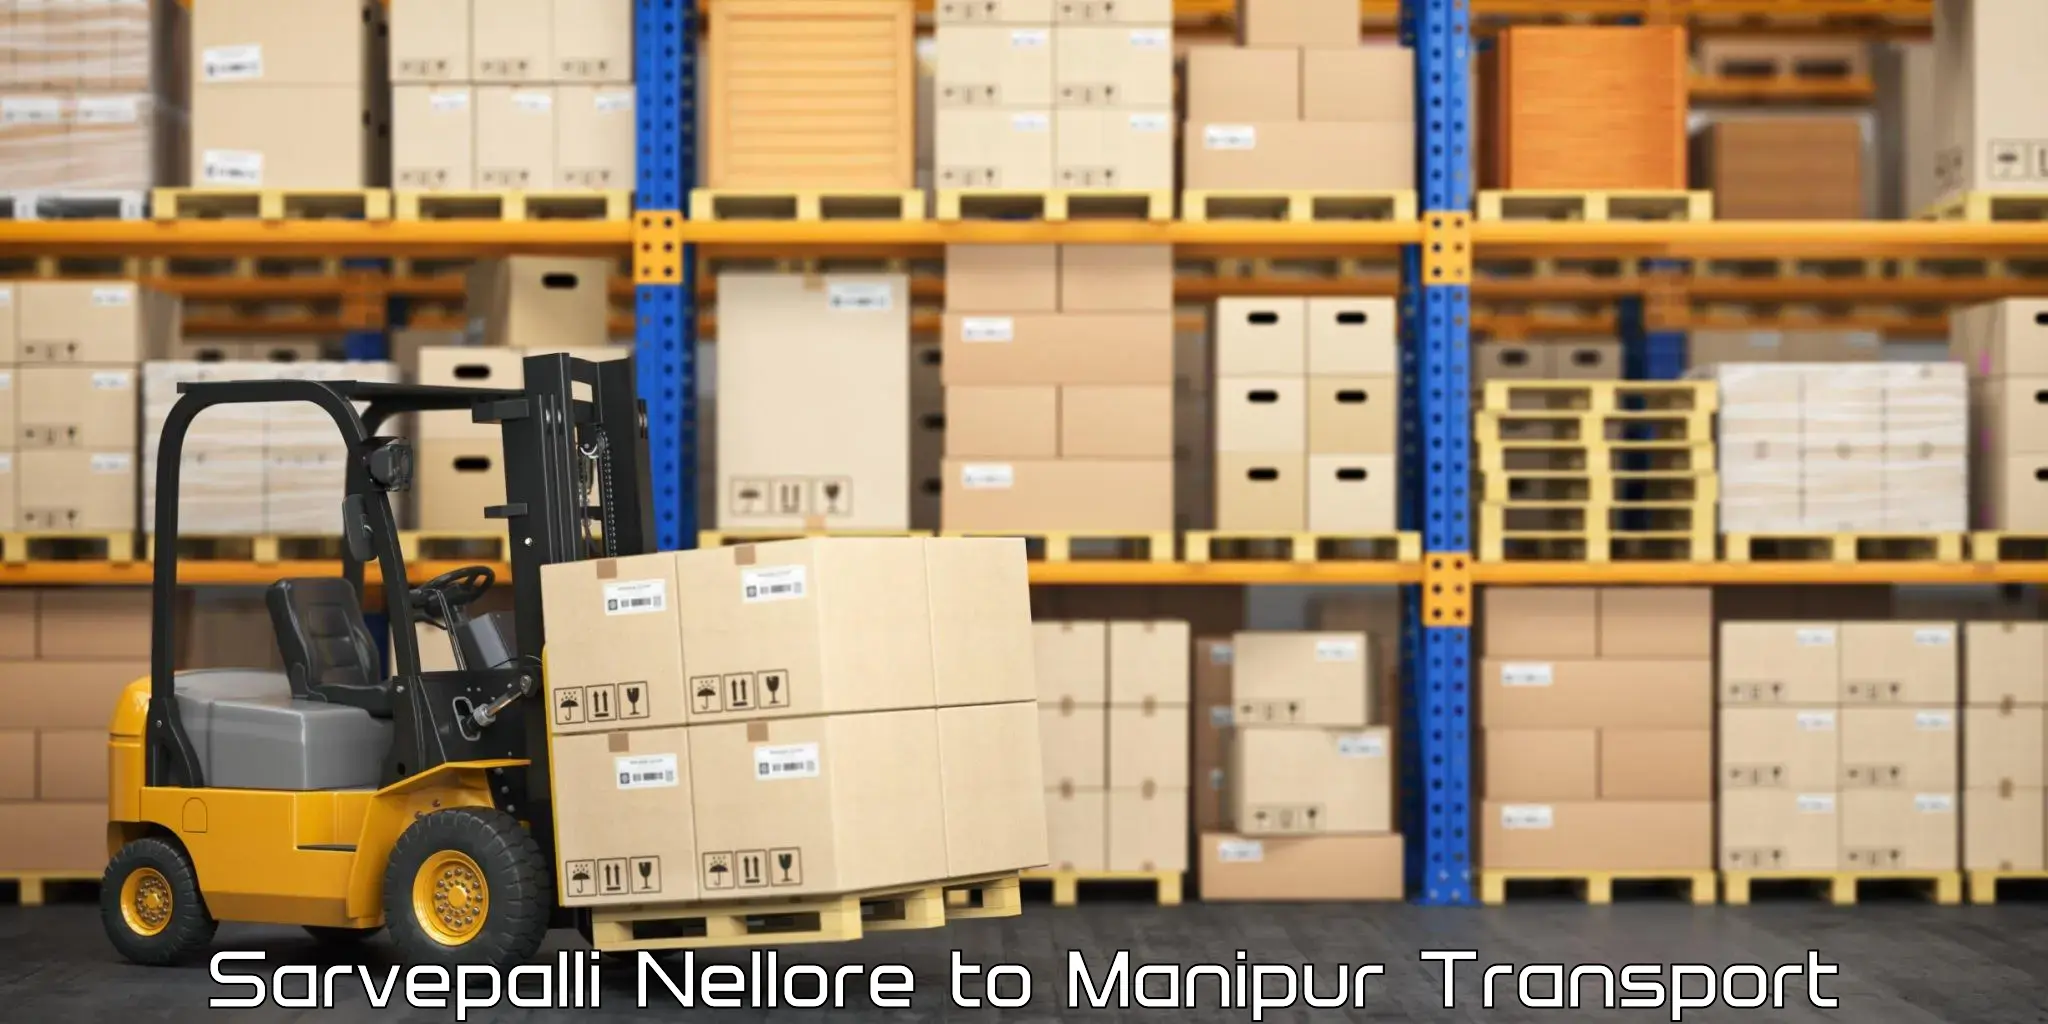 Goods delivery service Sarvepalli Nellore to Senapati